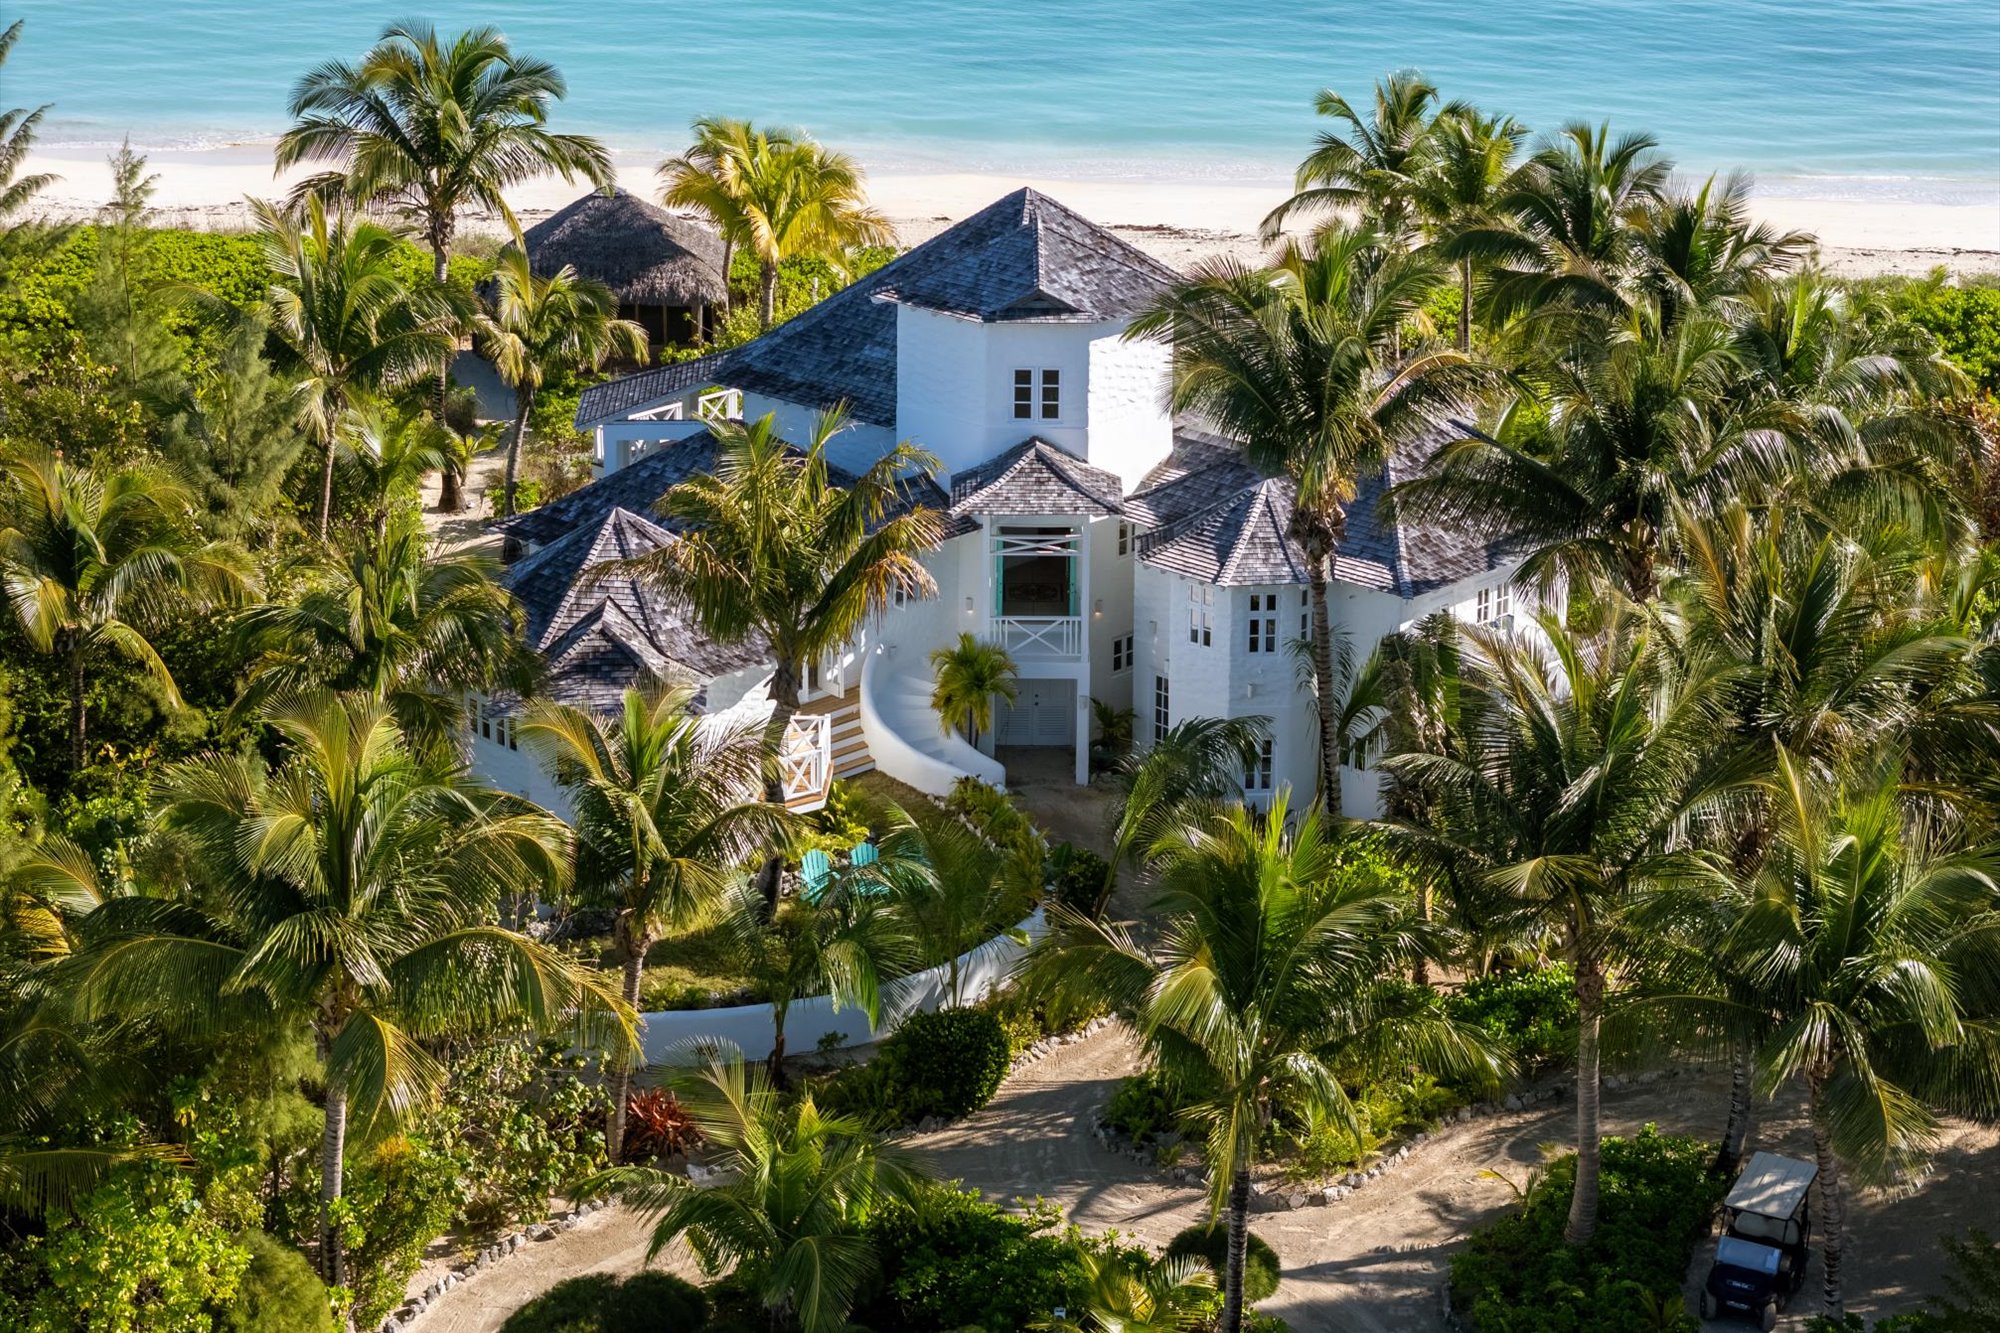 Magnolia Villa on Kamalame Cay